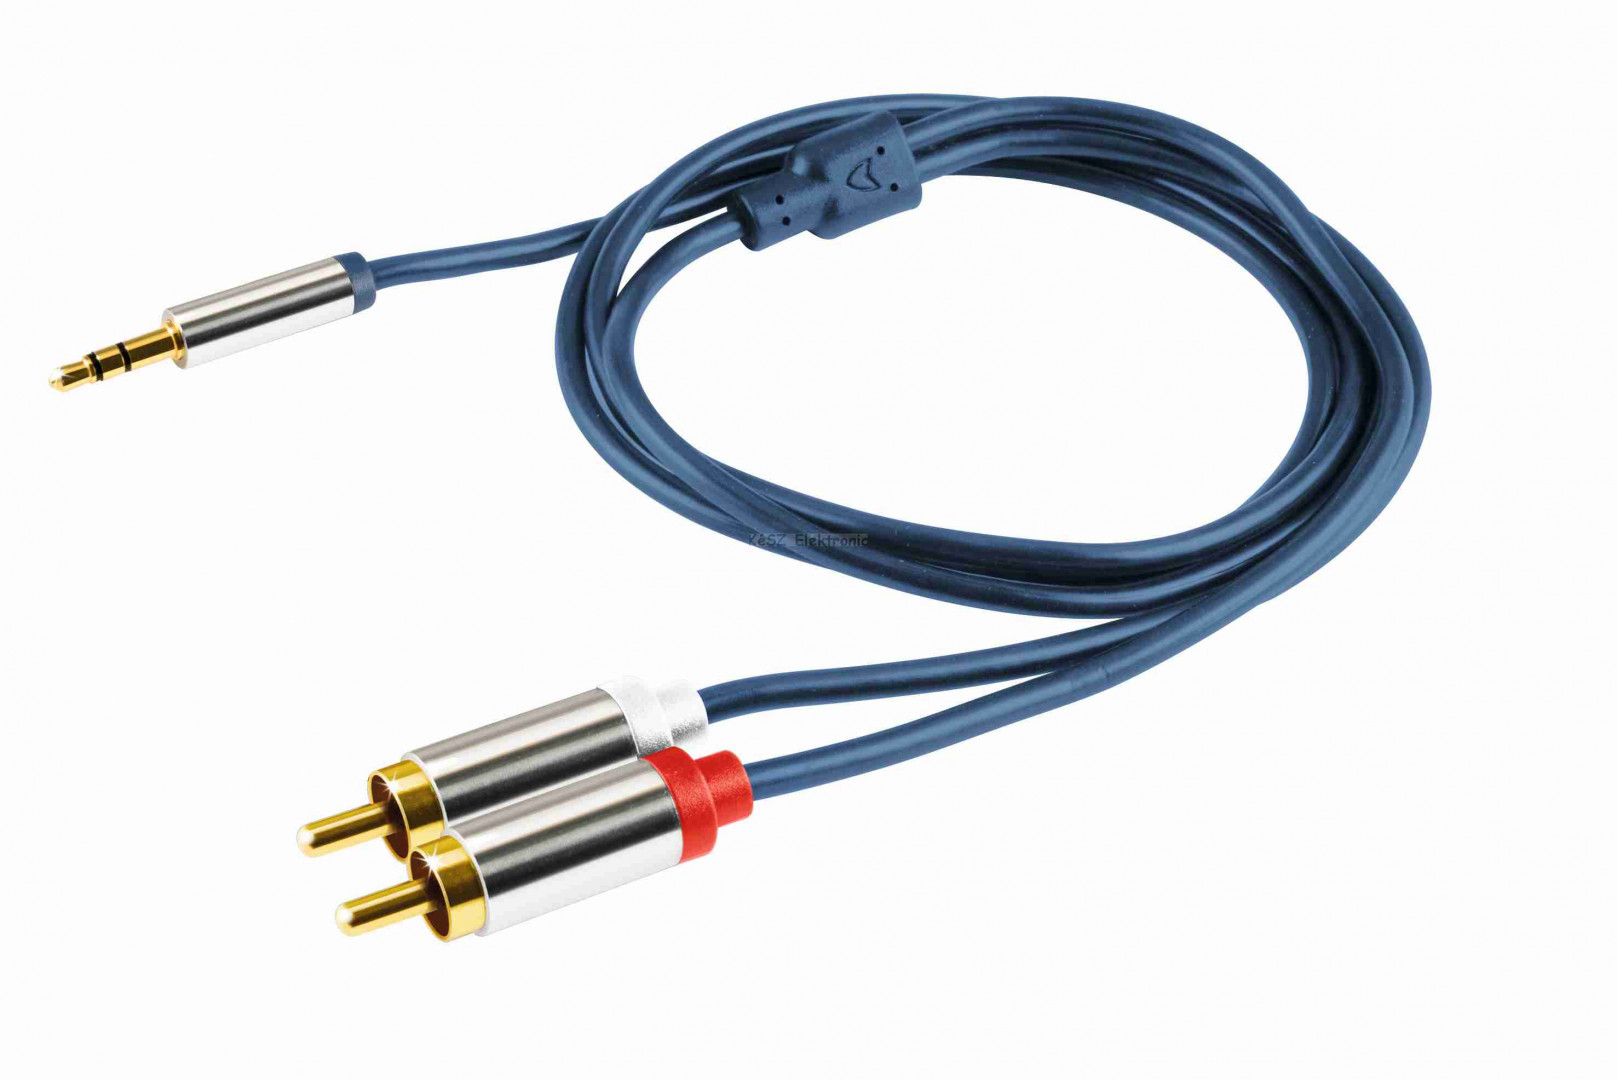 Audió kábel, 3,5 mm sztereó fém dugó-2 RCA fém dugó, 1 m